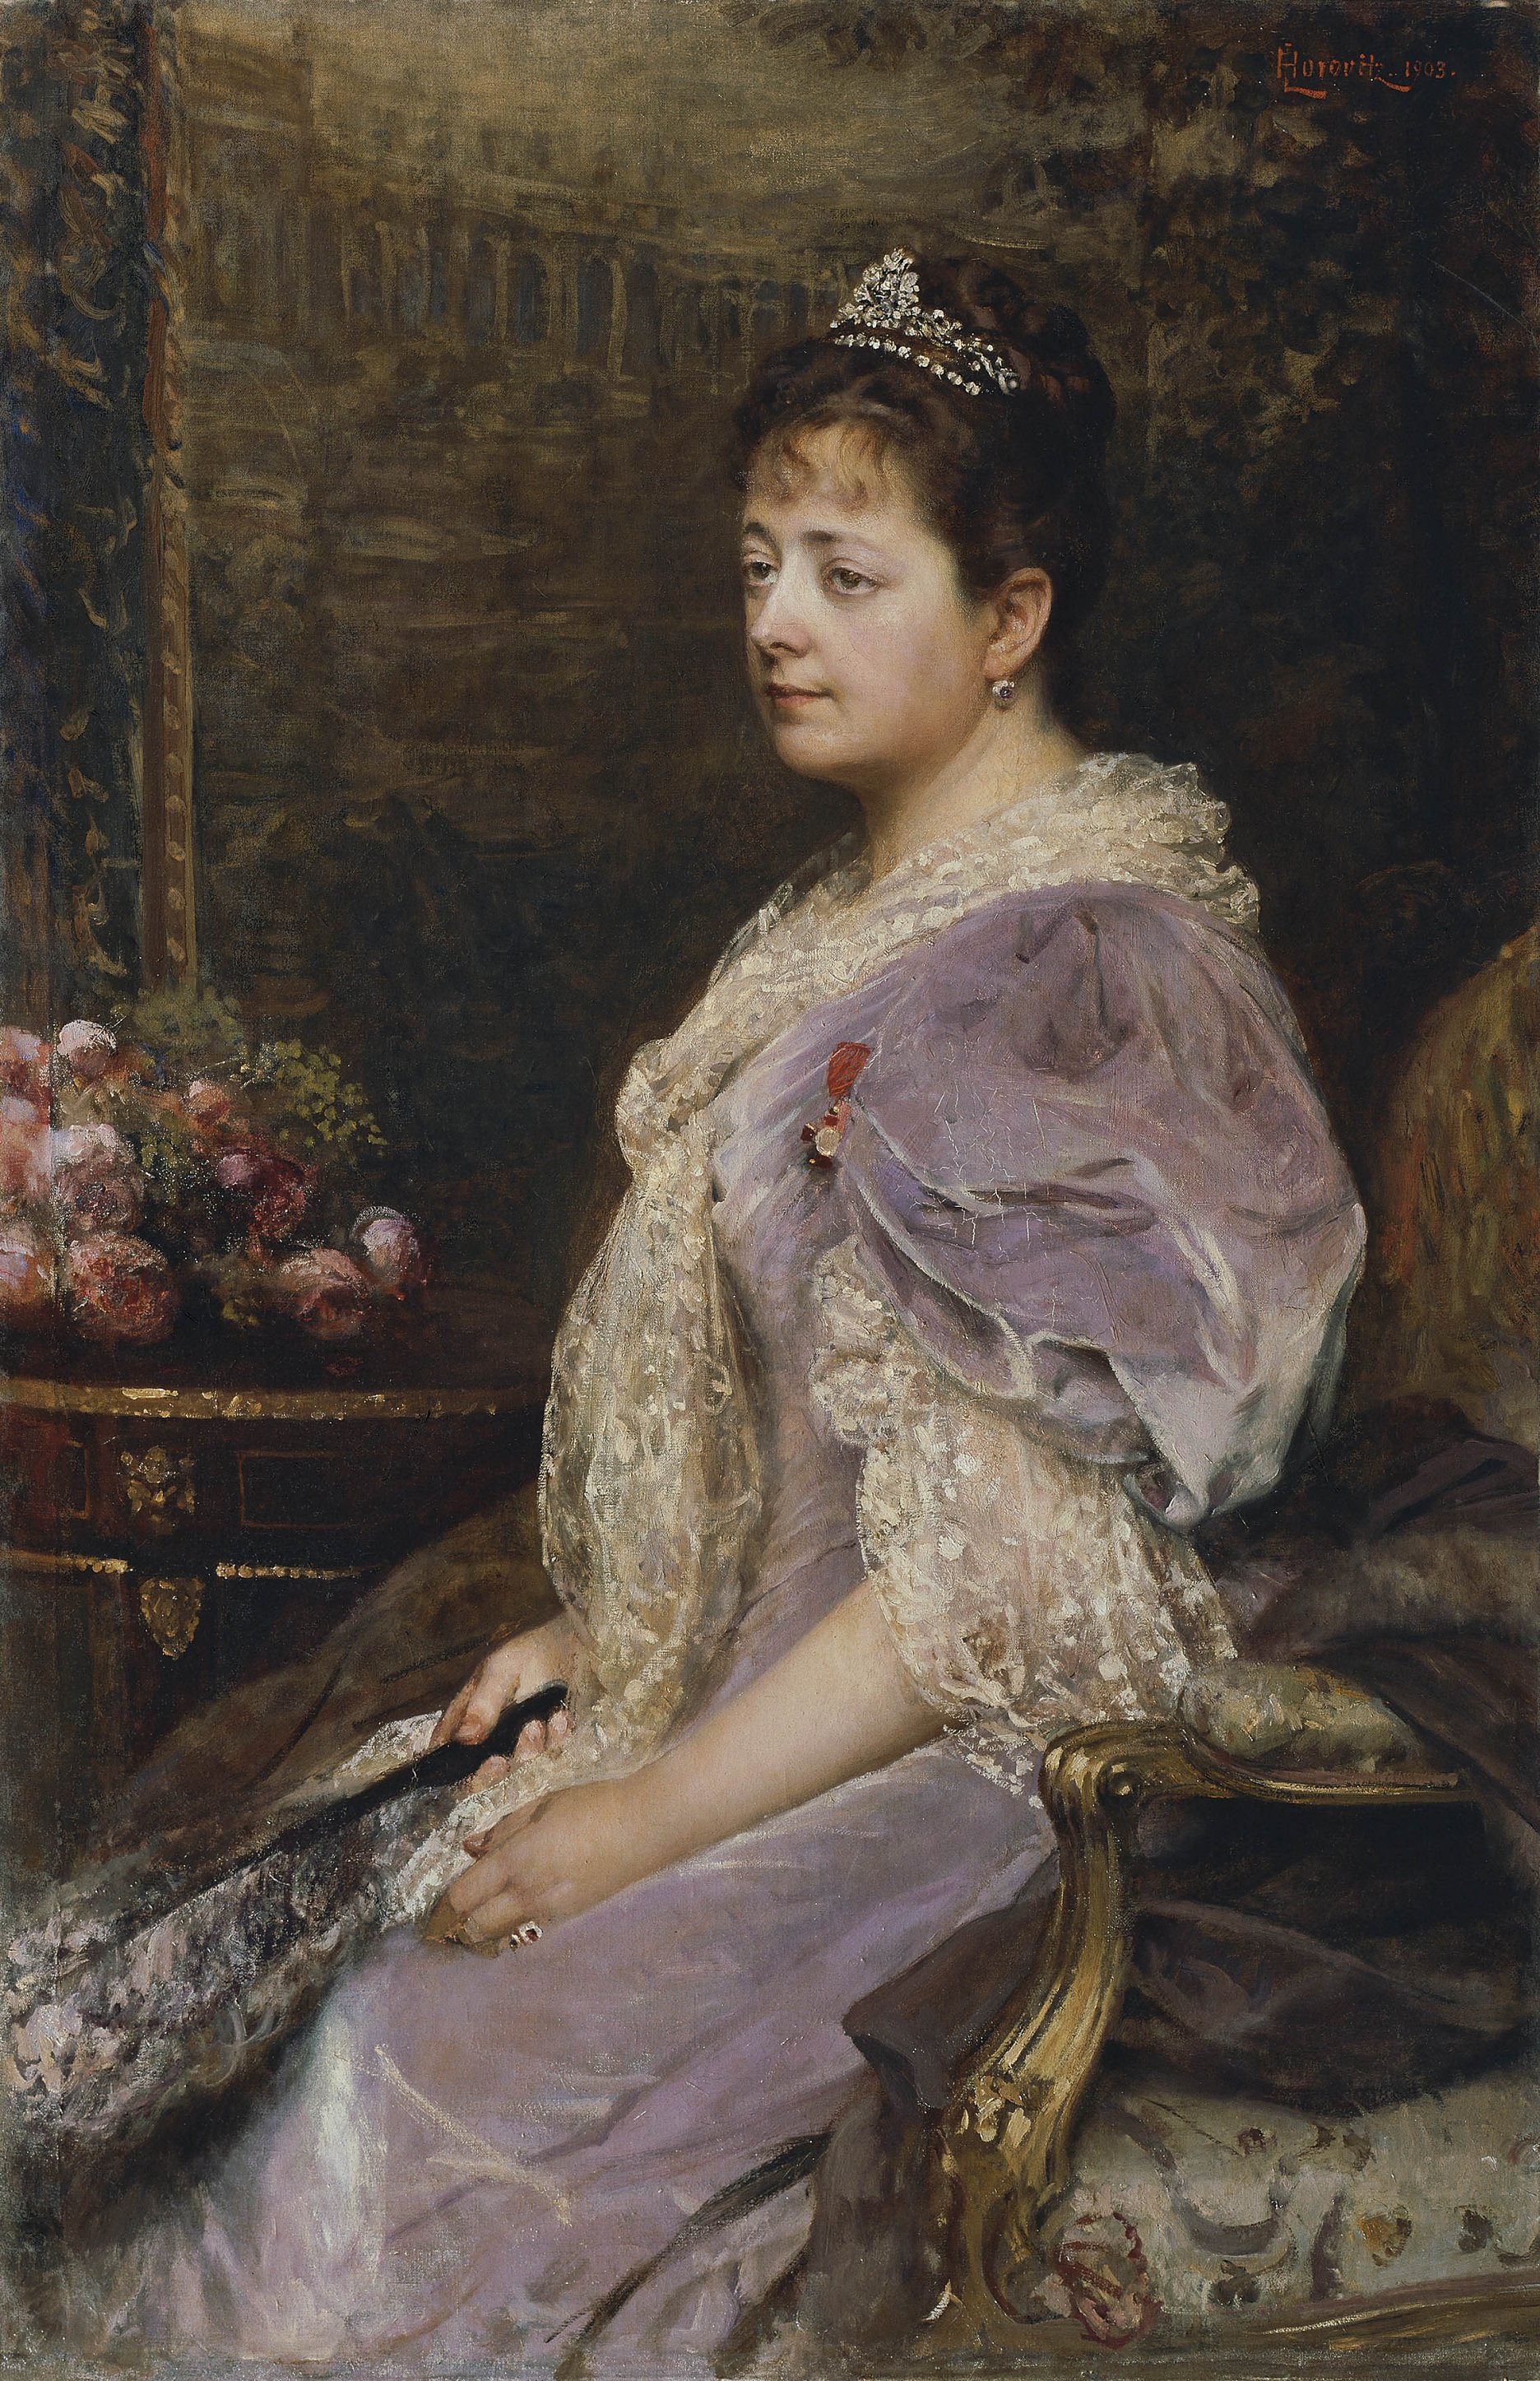 Leopold Horovitz: Portrét Honory Sary Krallovej. 1903. Olej, plátno. Rakúska galéria Belvedere, Viedeň